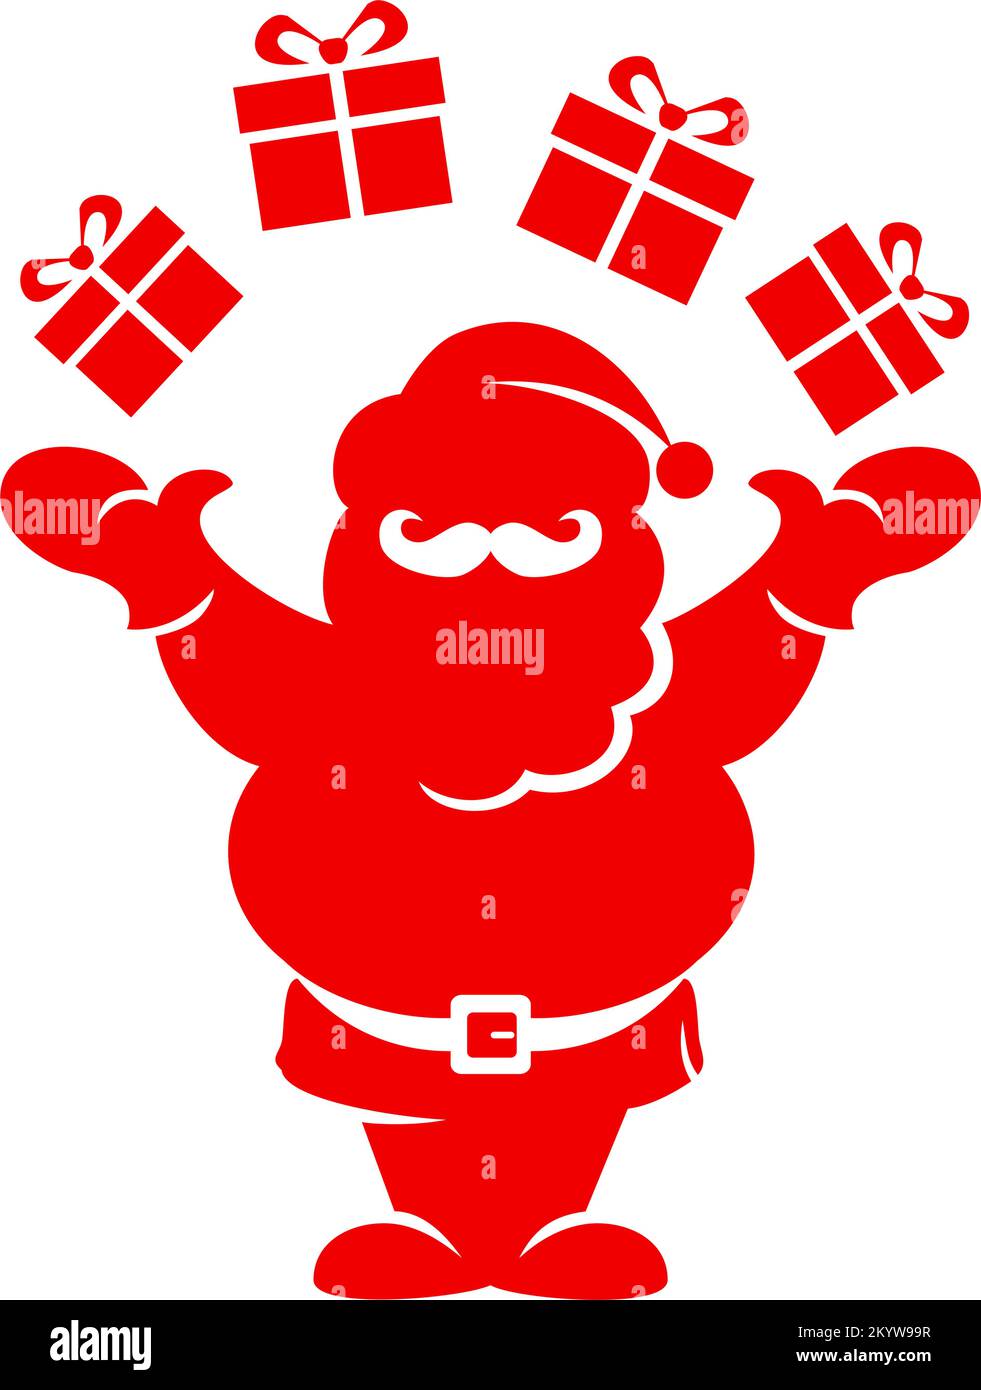 Die Silhouette des Weihnachtsmanns jongliert mit Geschenken. Vektorsymbol auf transparentem Hintergrund Stock Vektor